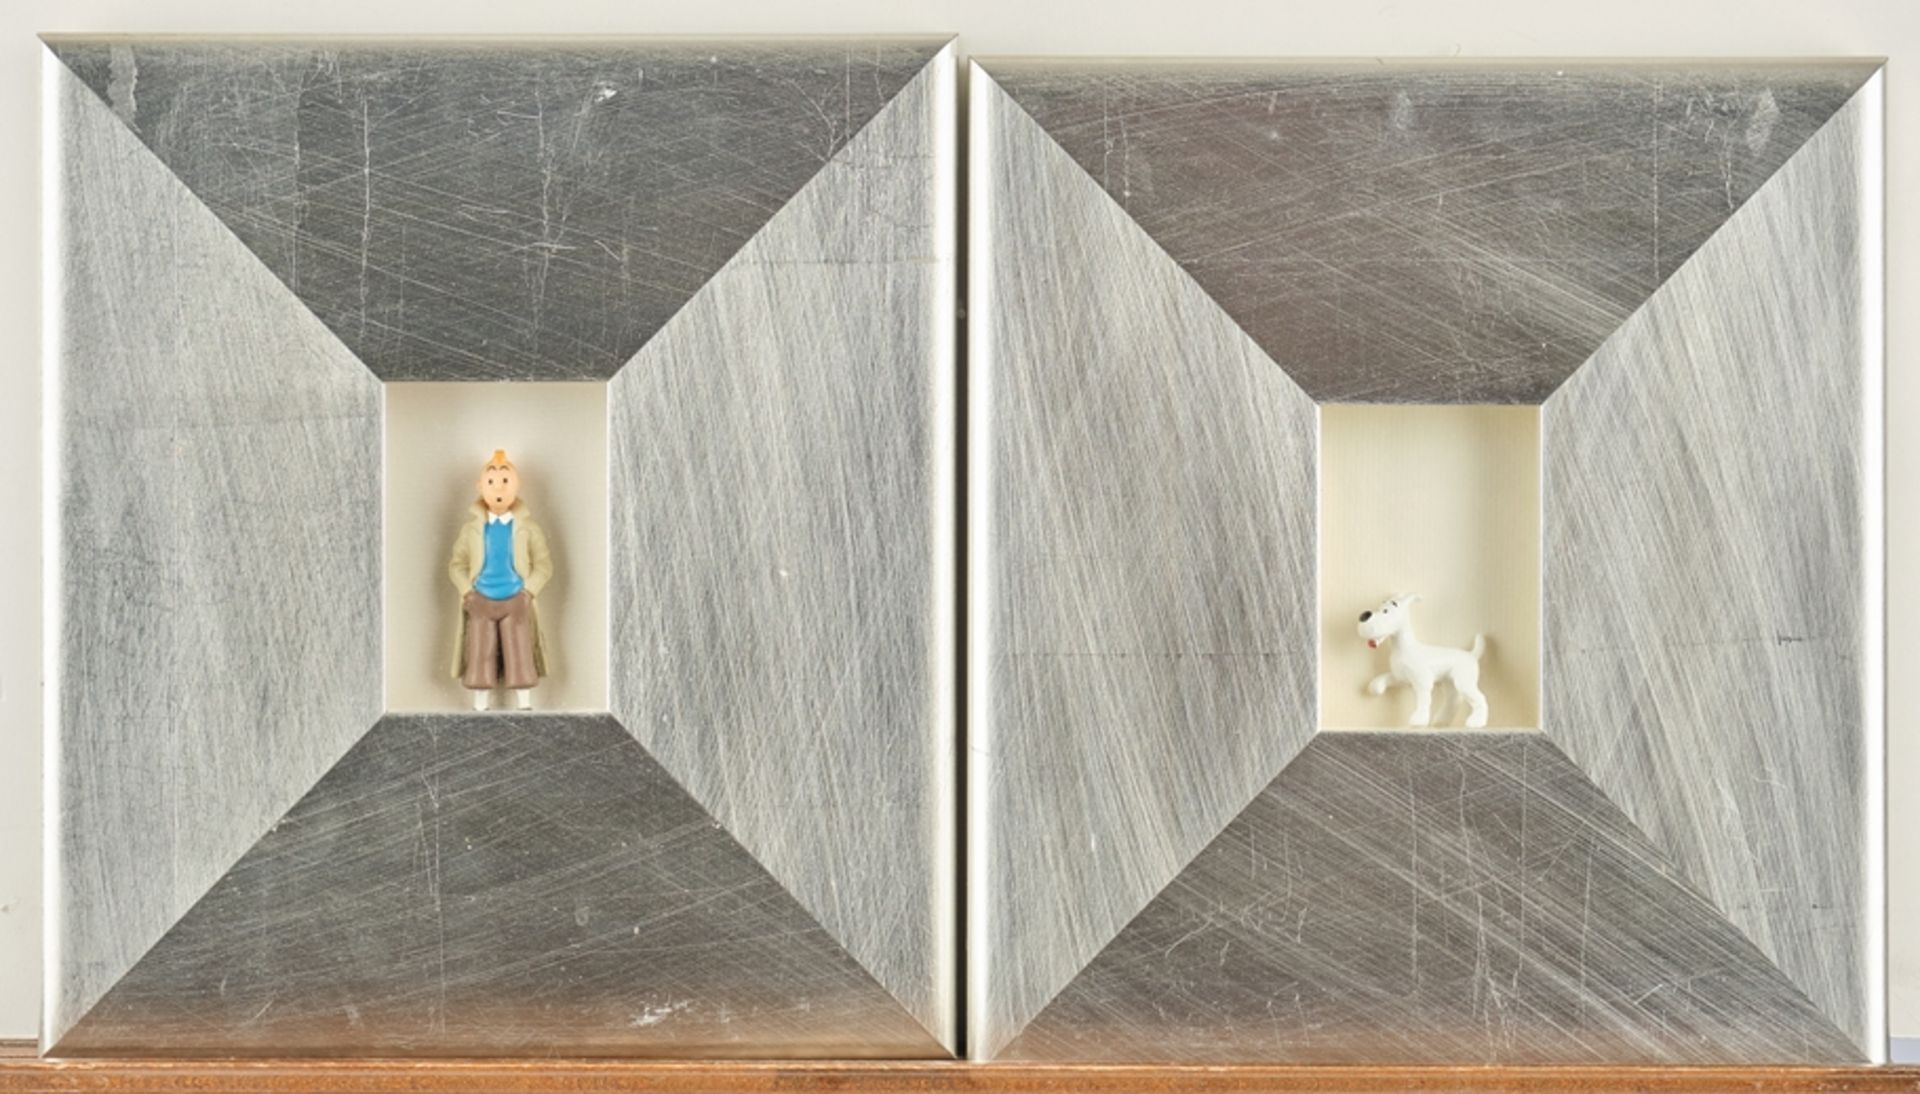 Zwei Figuren, "Tim" und "Struppi", RM je 30 x 20 cm, je unter Glas gerahmt